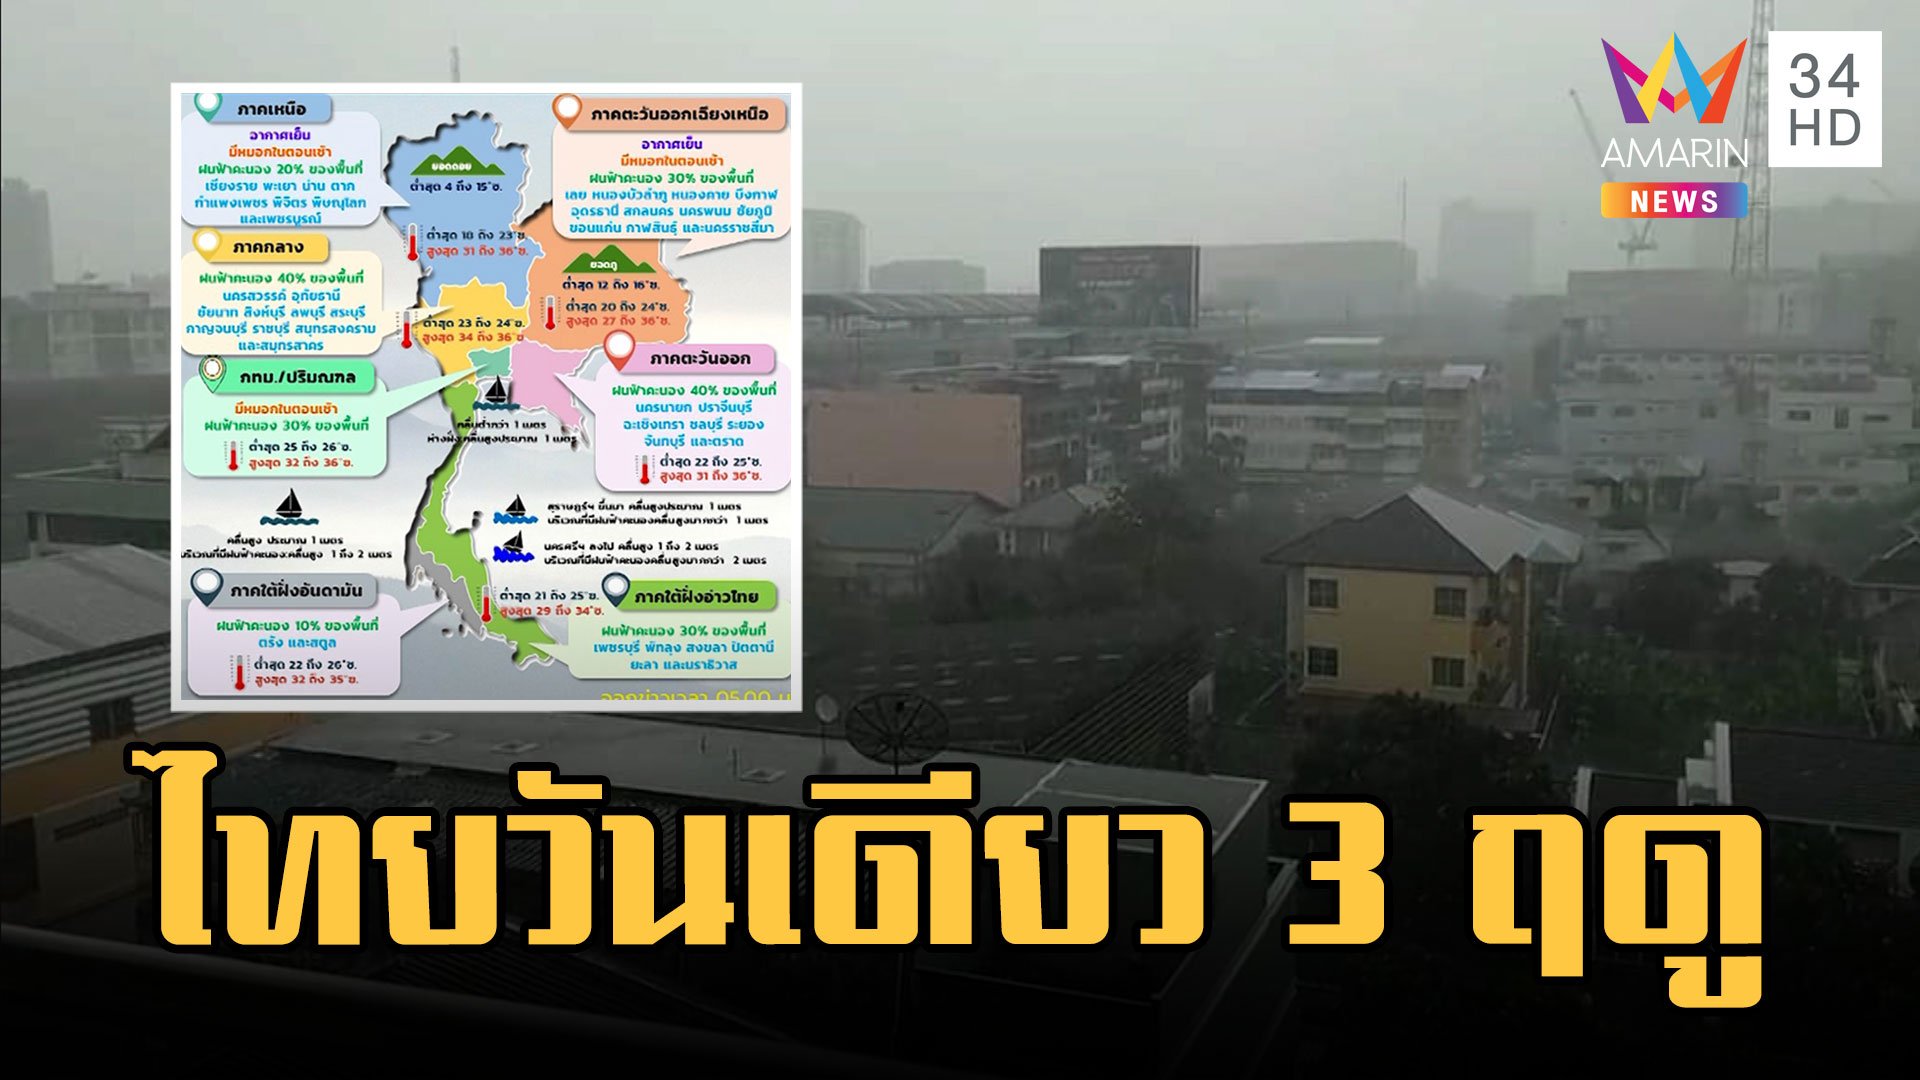 กรมอุตุฯ เตือน ทั่วไทยฝนตก ปชช.งงวันเดียว 3 ฤดู | ข่าวอรุณอมรินทร์ | 6 ก.พ. 66 | AMARIN TVHD34